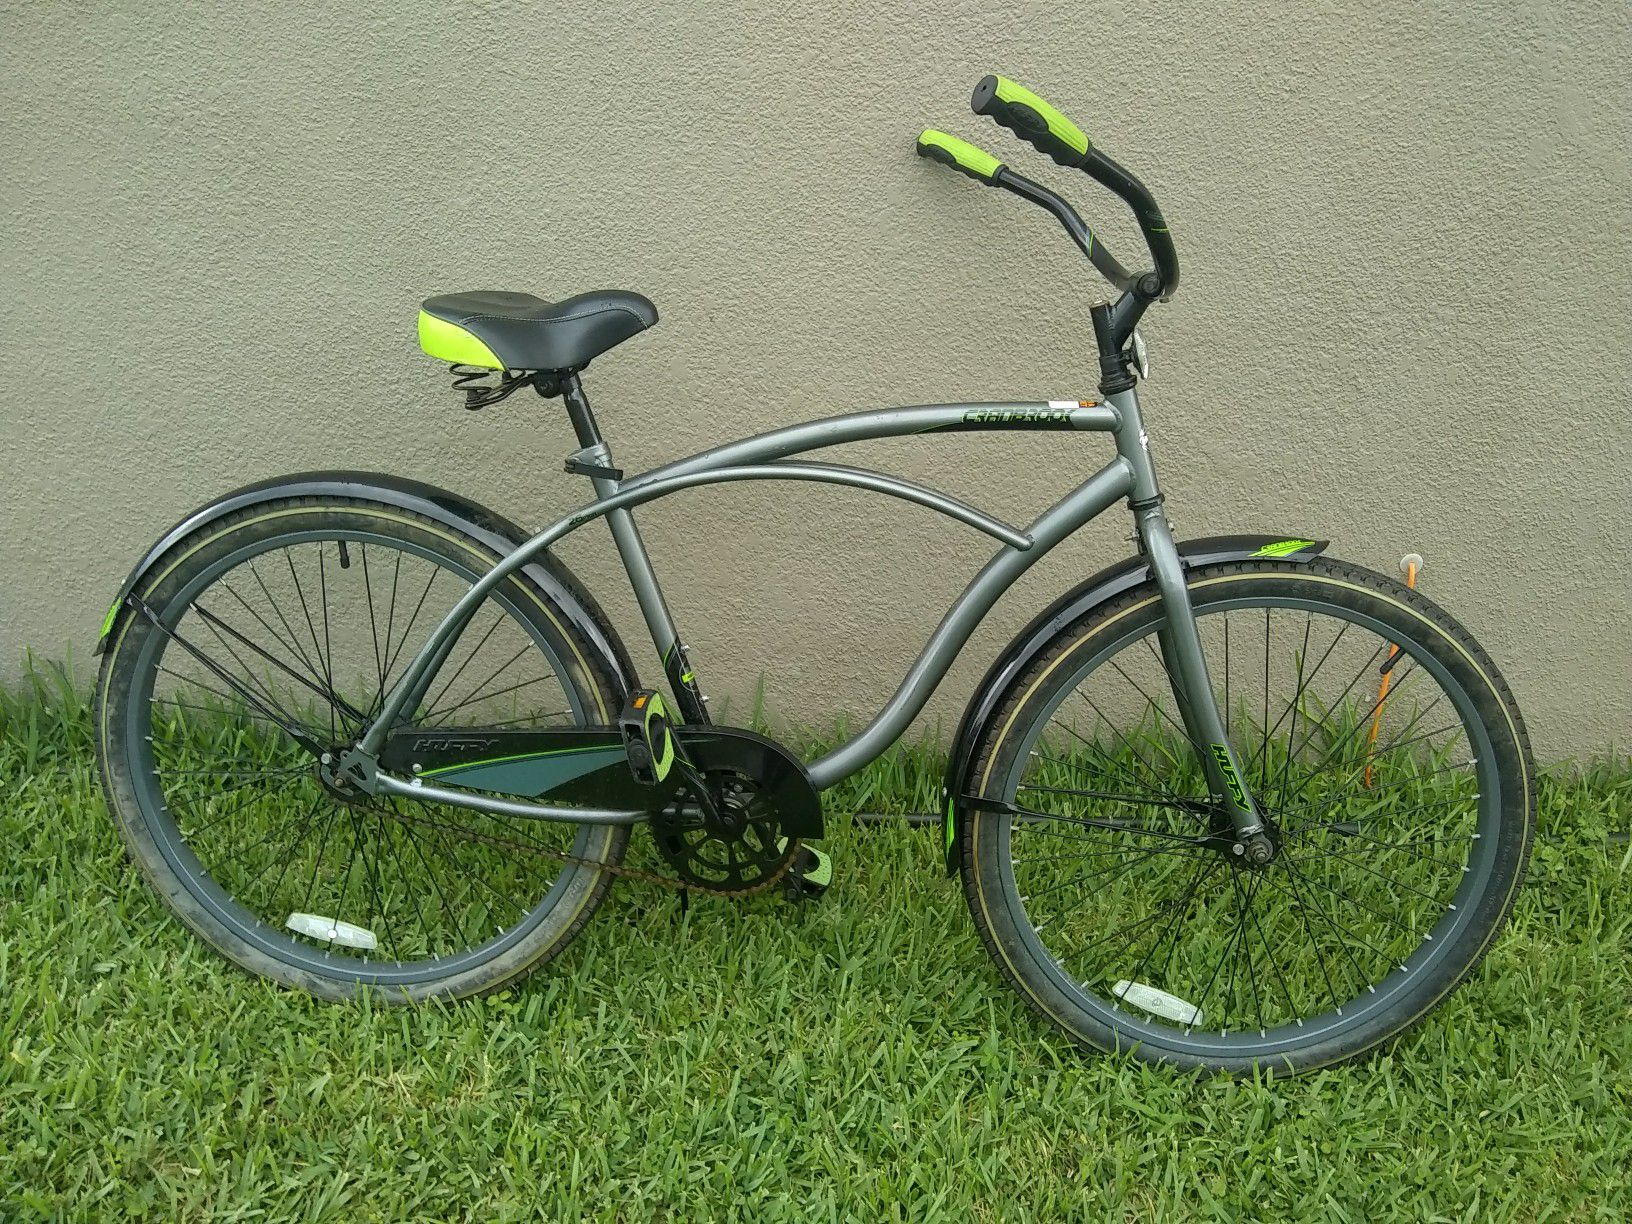 Adult 26" cruiser bike